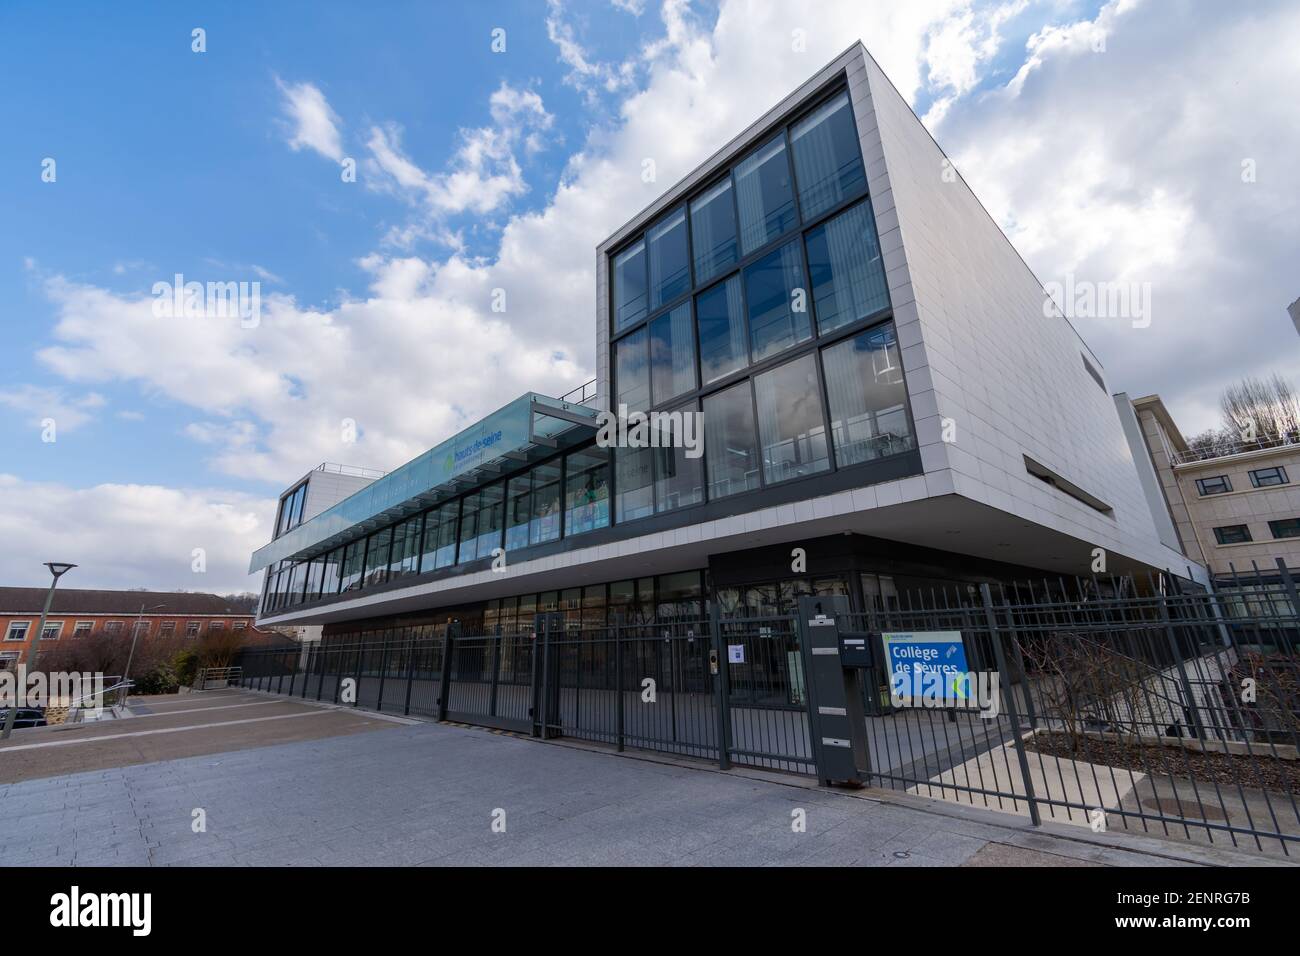 Sèvres, France - 26 février 2021 : vue extérieure du collège de Sèvres (sections internationales) Banque D'Images